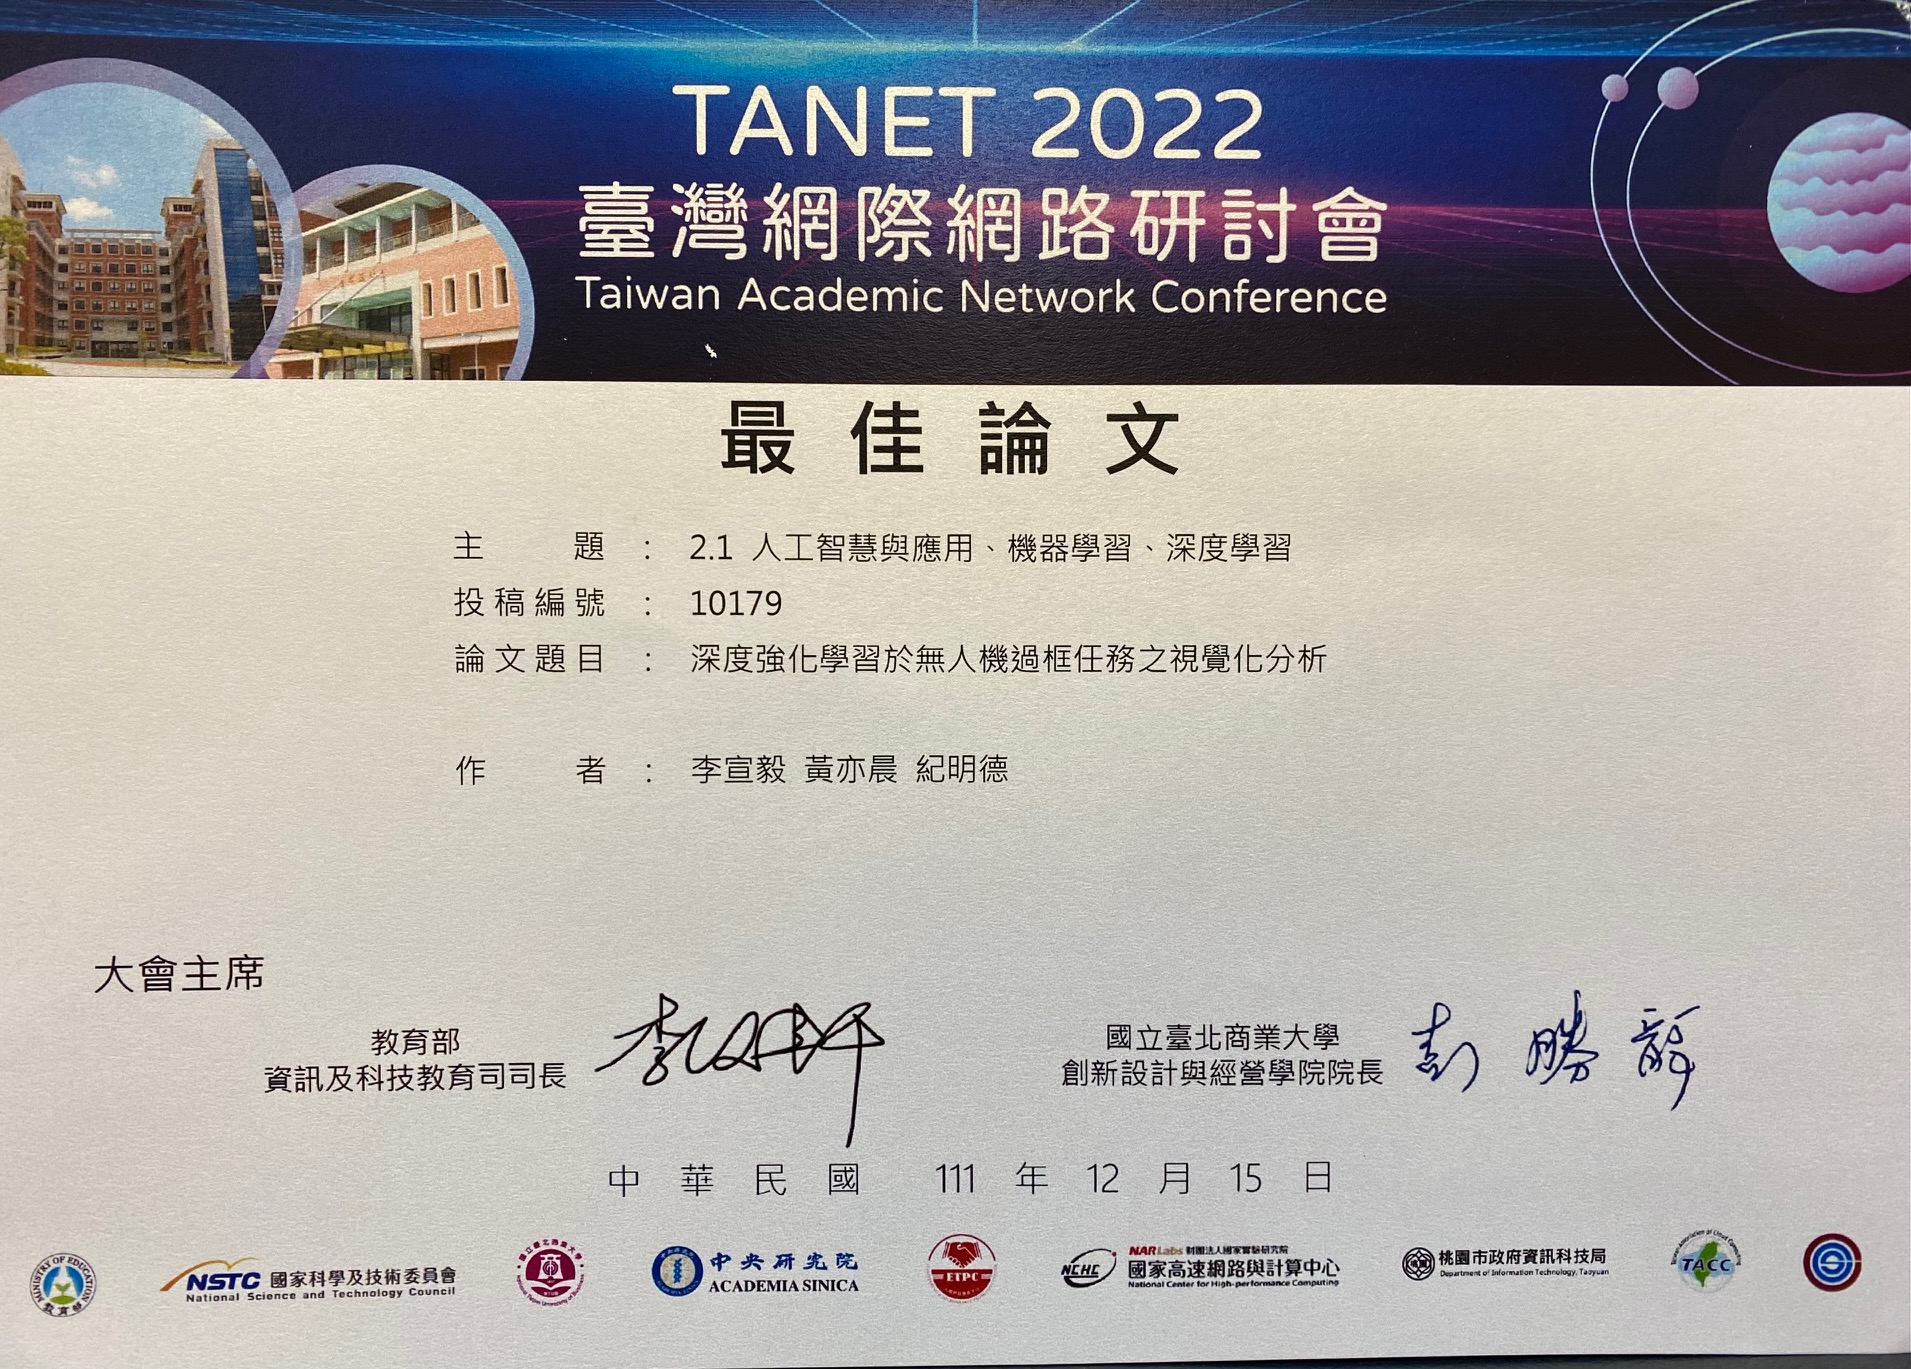 本院資科系同學論文獲 TANET 2022 最佳論文獎